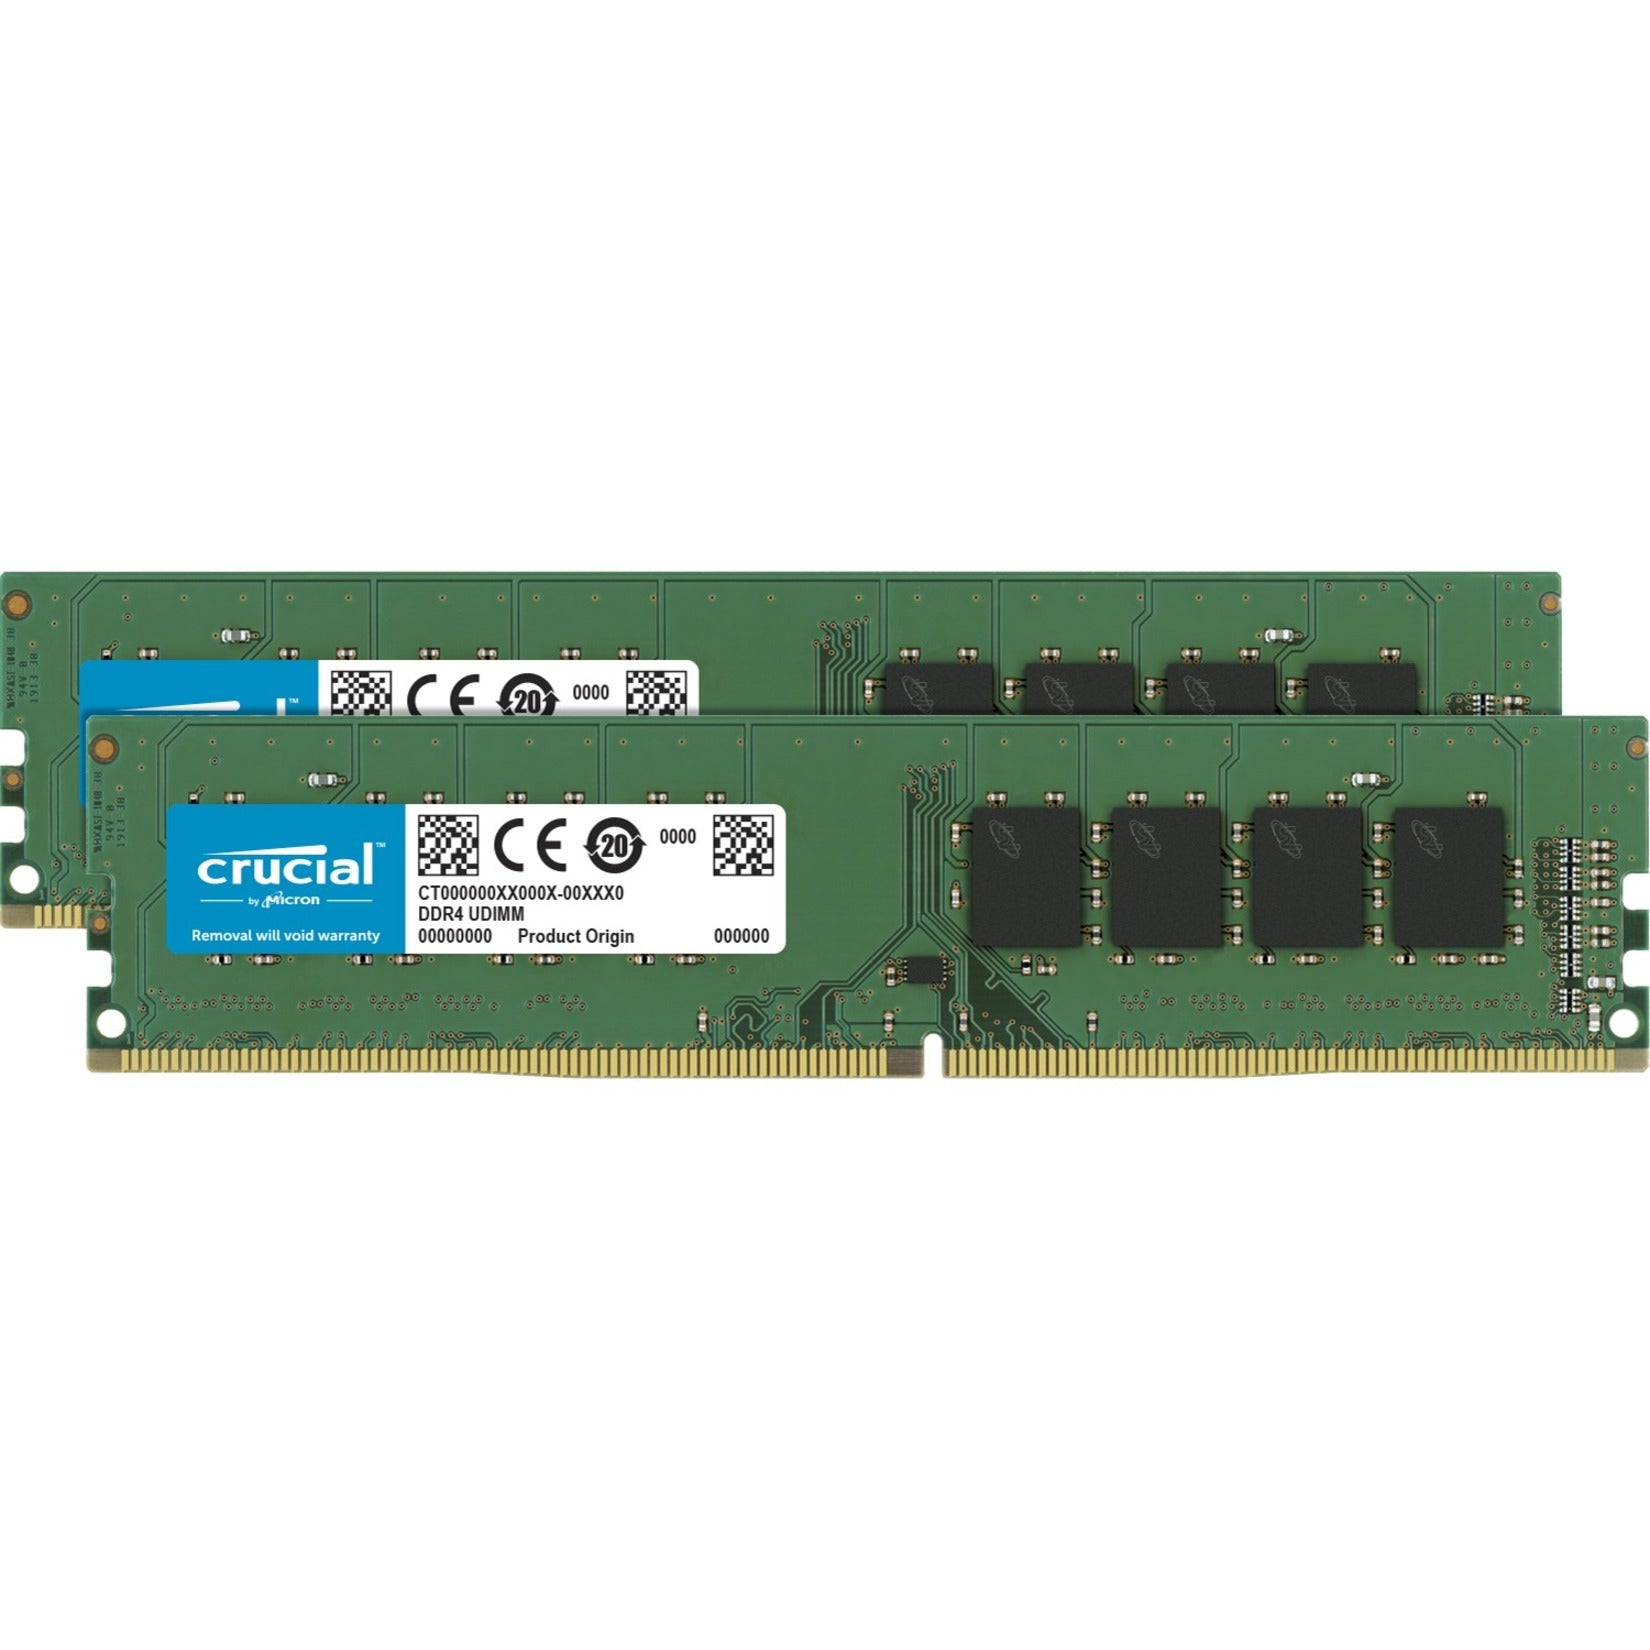 Crucial CT2K8G4DFRA32A 16GB (2 x 8GB) DDR4 SDRAM Memory Kit, 3200 MHz, Lifetime Warranty